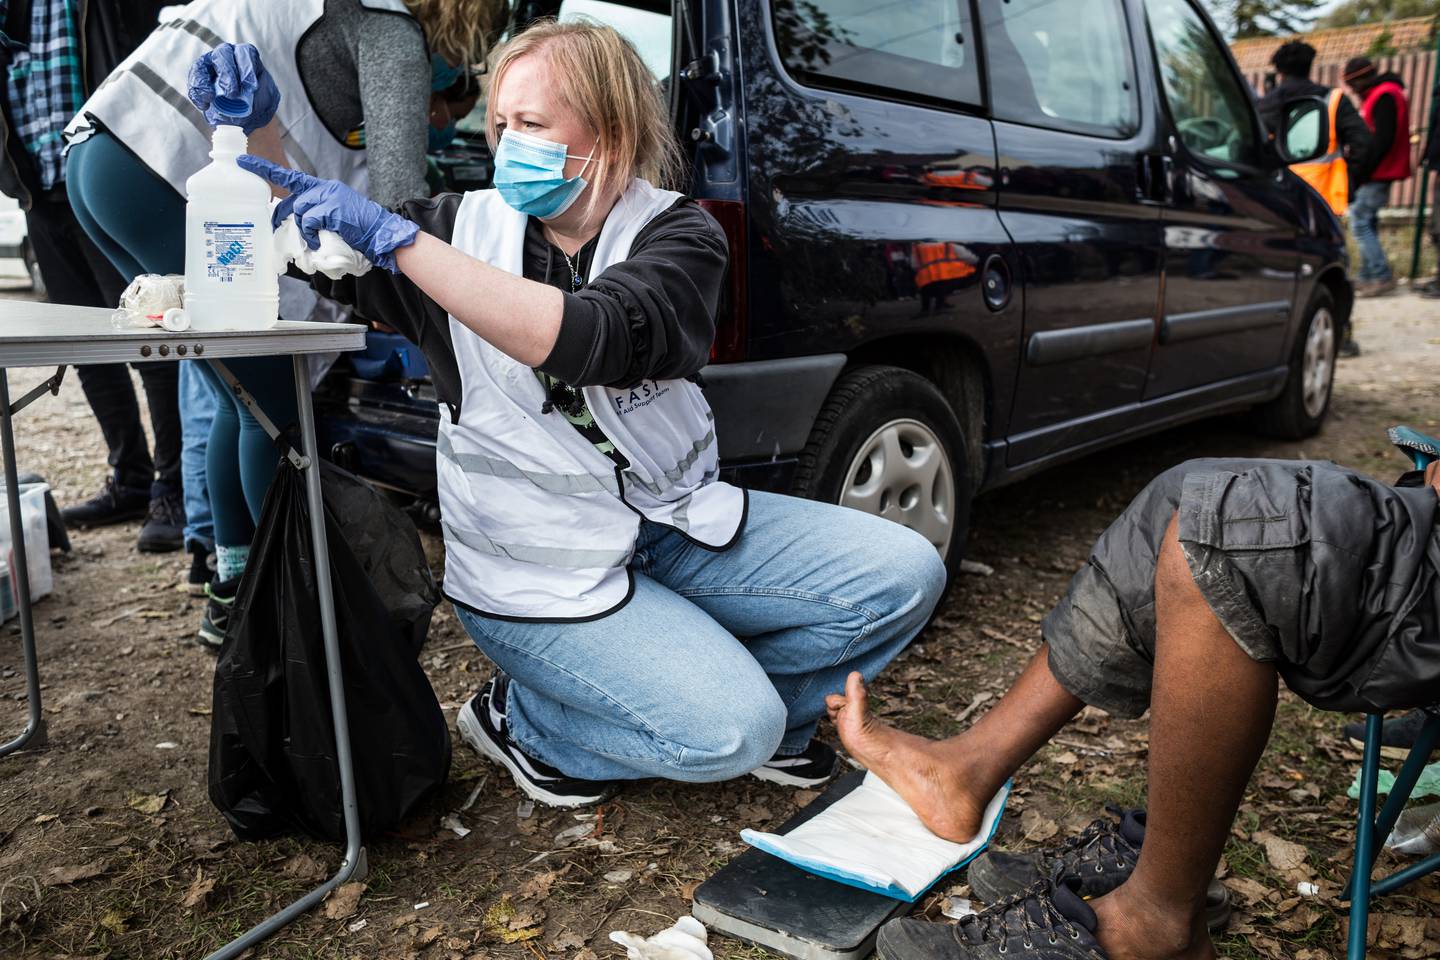 25.	Noleen, en britisk doktor og feltkoordinator for F.A.S.T. – First Aid Support Team i Calais, behandler skader på foten til en ung sudanesisk gutt i nærheten av Old Lidl, den største teltleiren i byen.